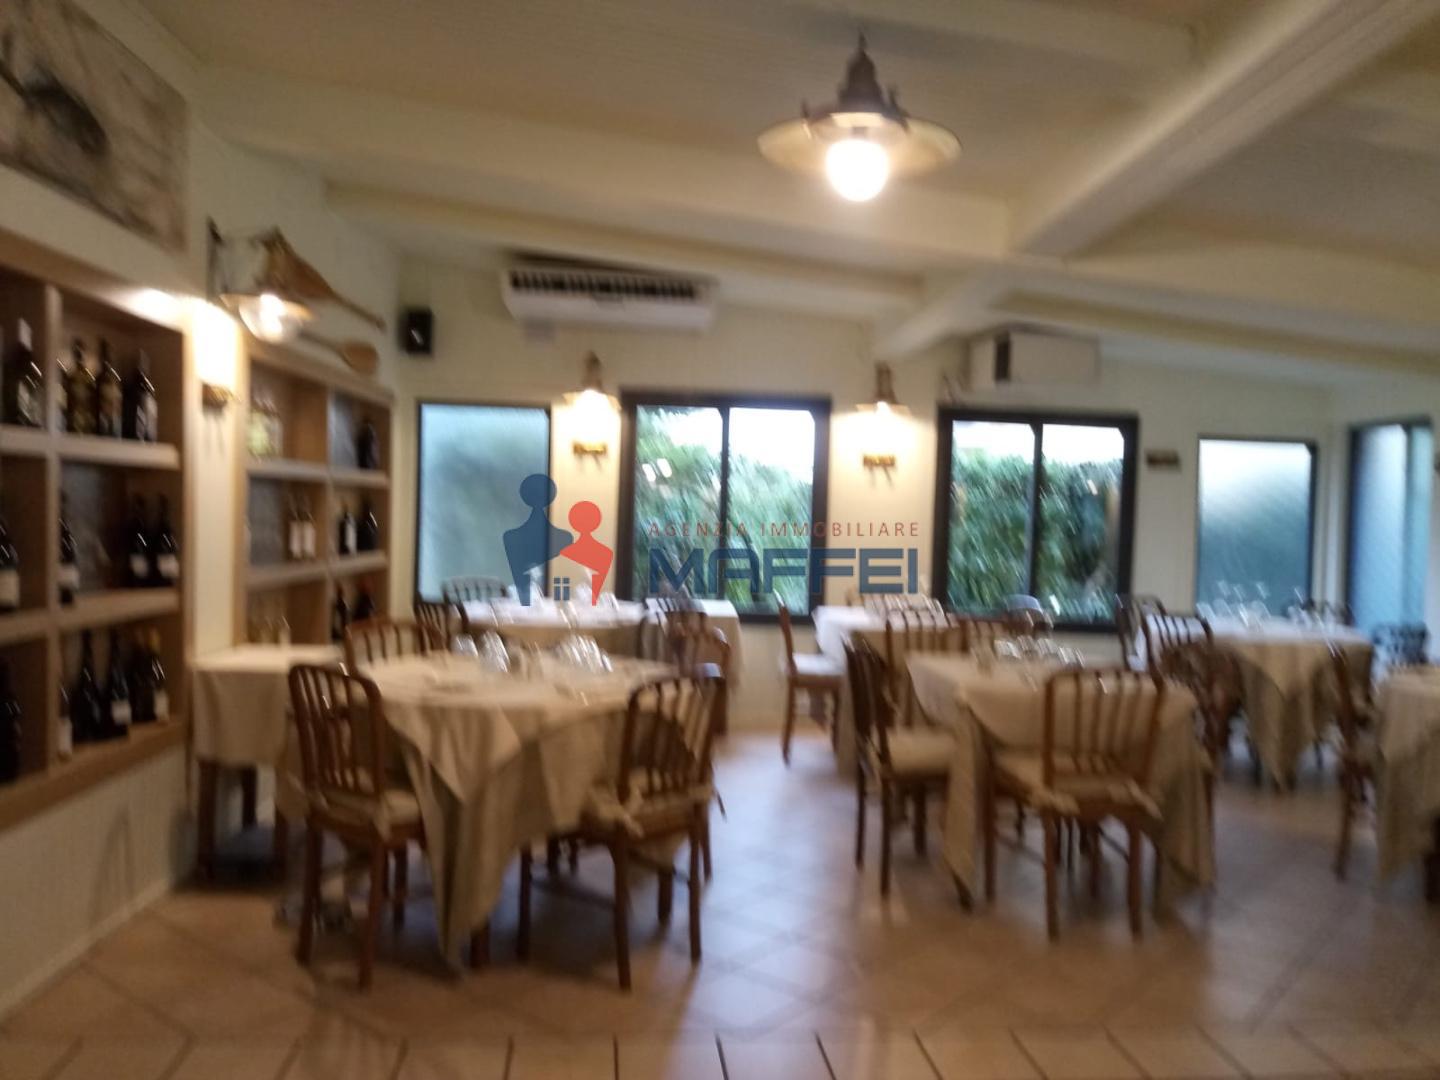 Restaurant for sale in Viareggio (LU)